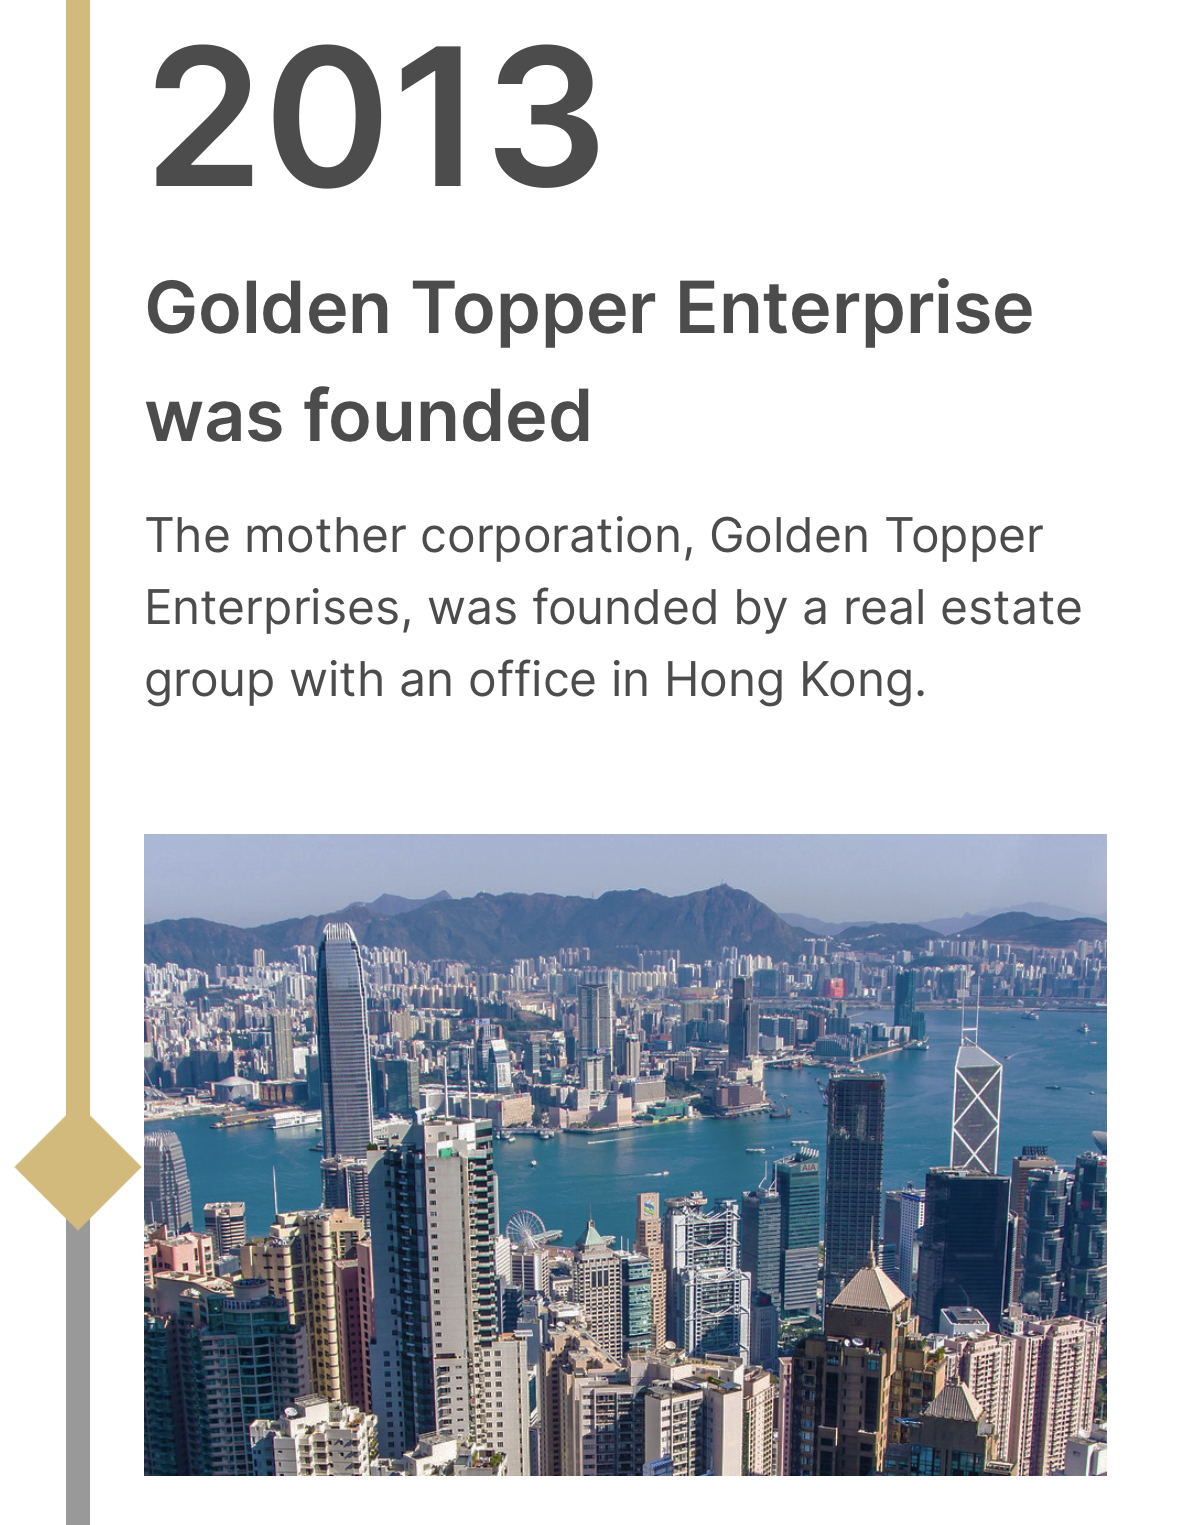 Golden Topper Enterprises創立は2013年